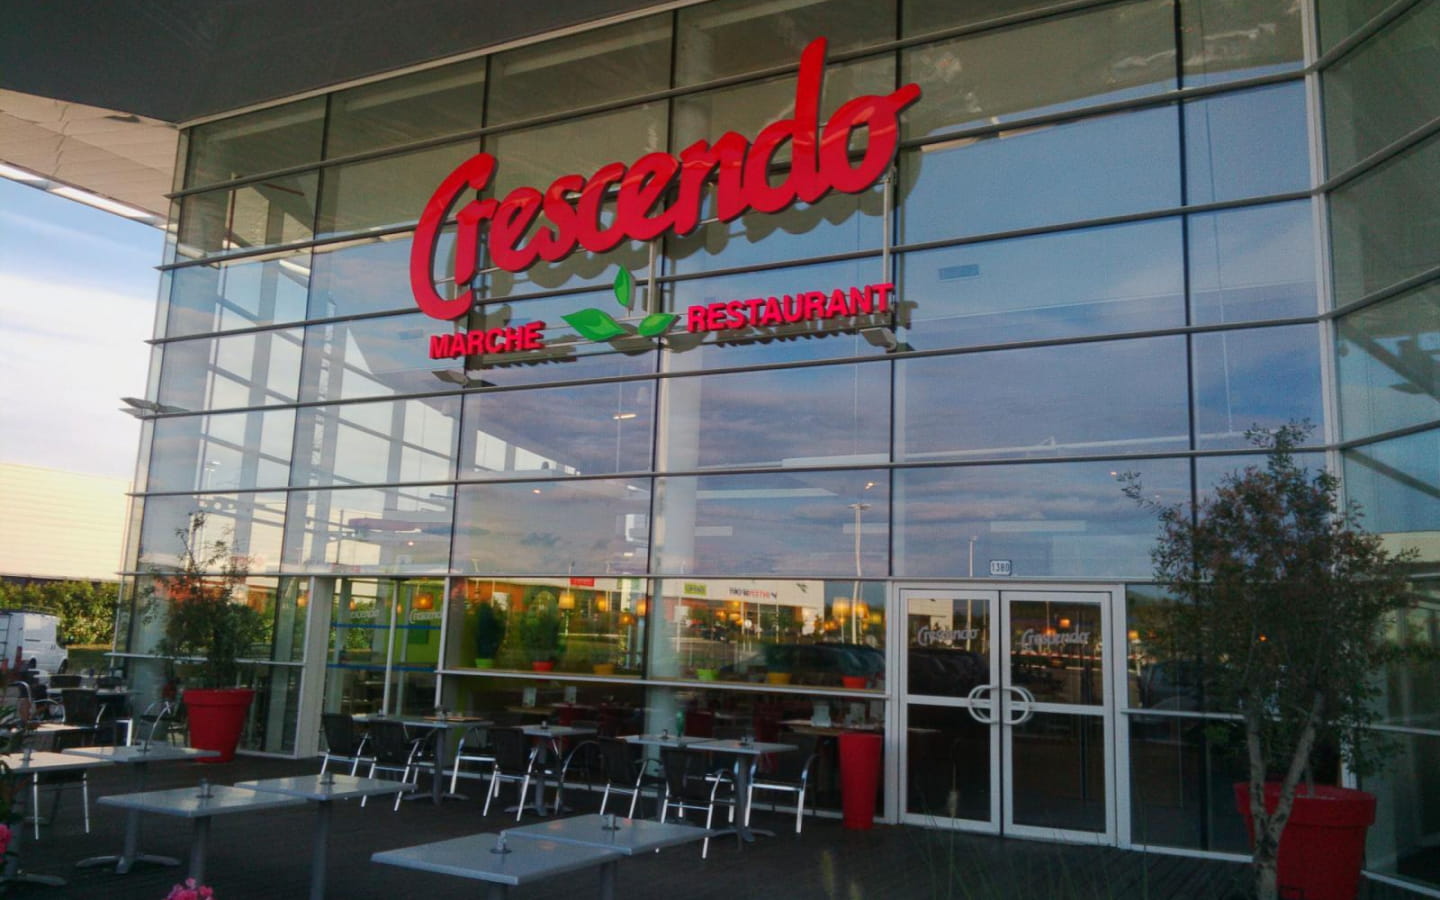 Crescendo Restaurant